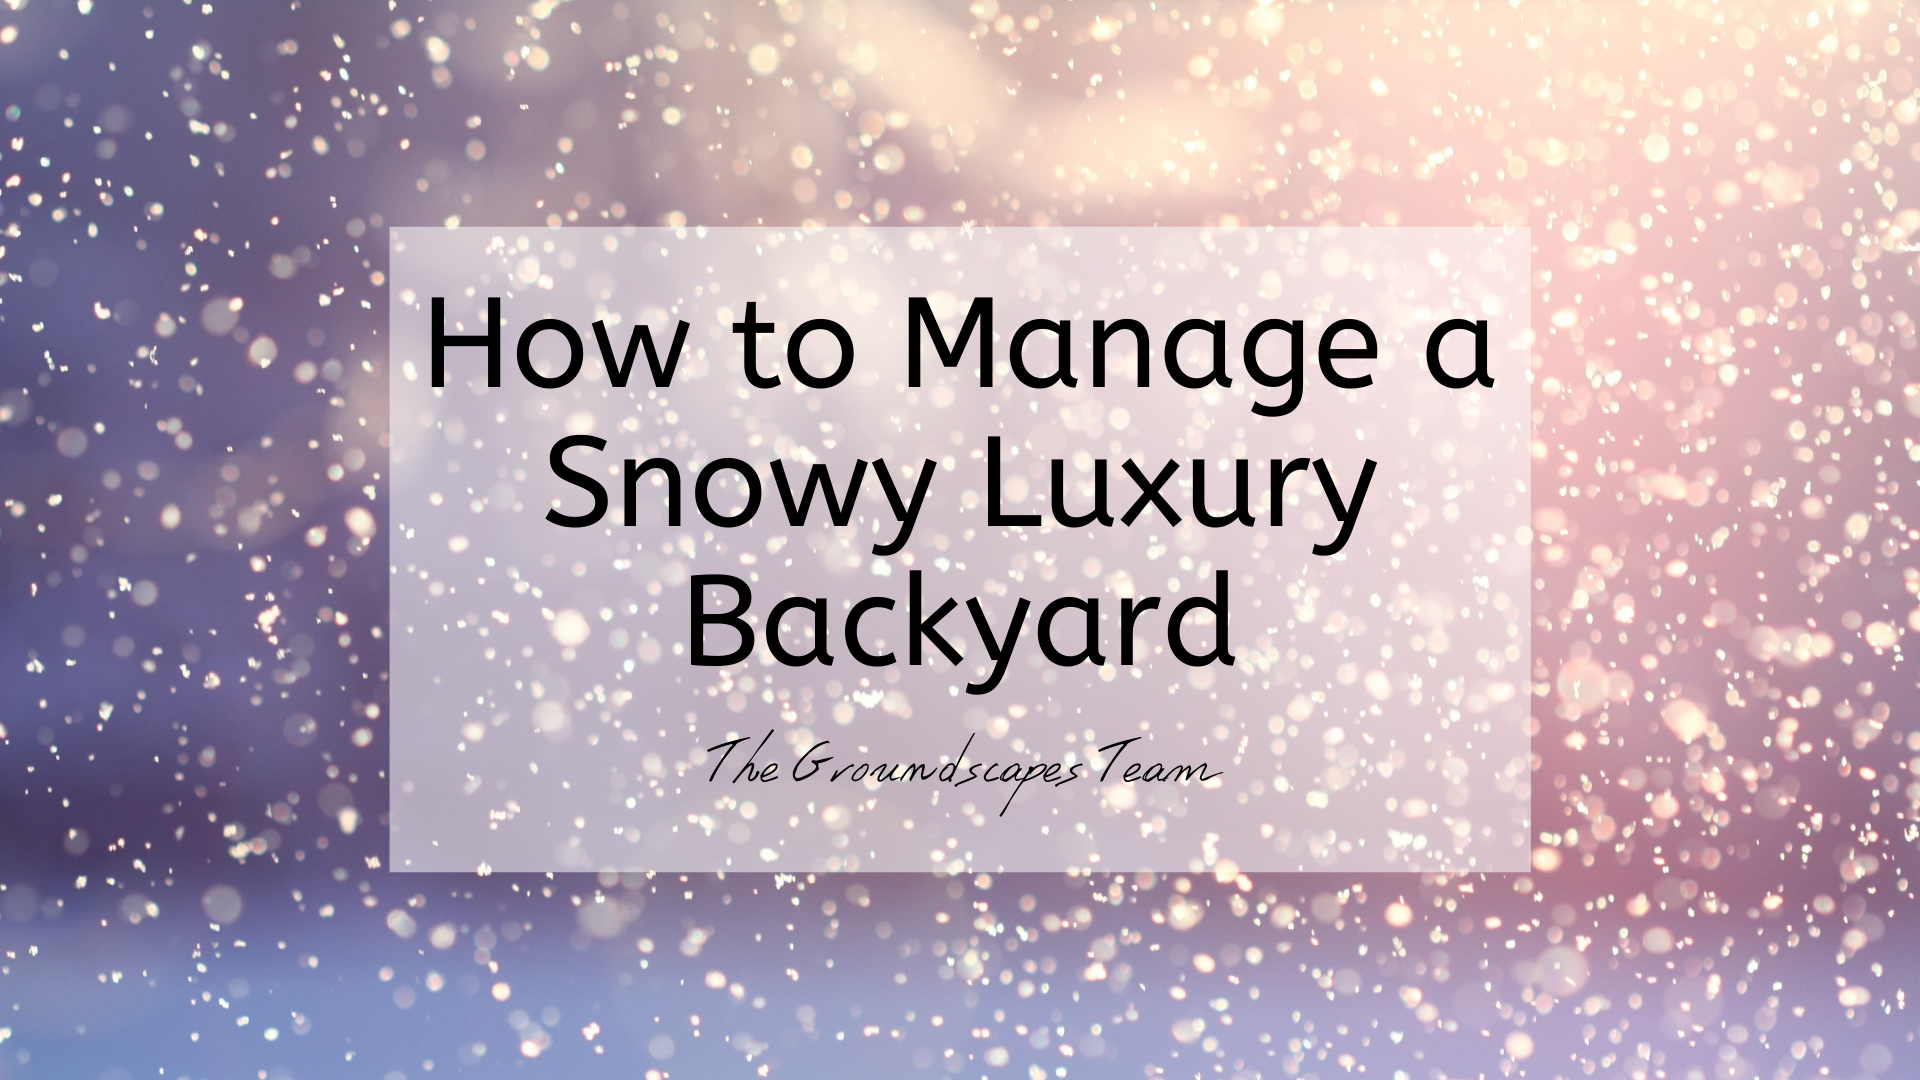 How to Manage a Snowy Luxury Backyard